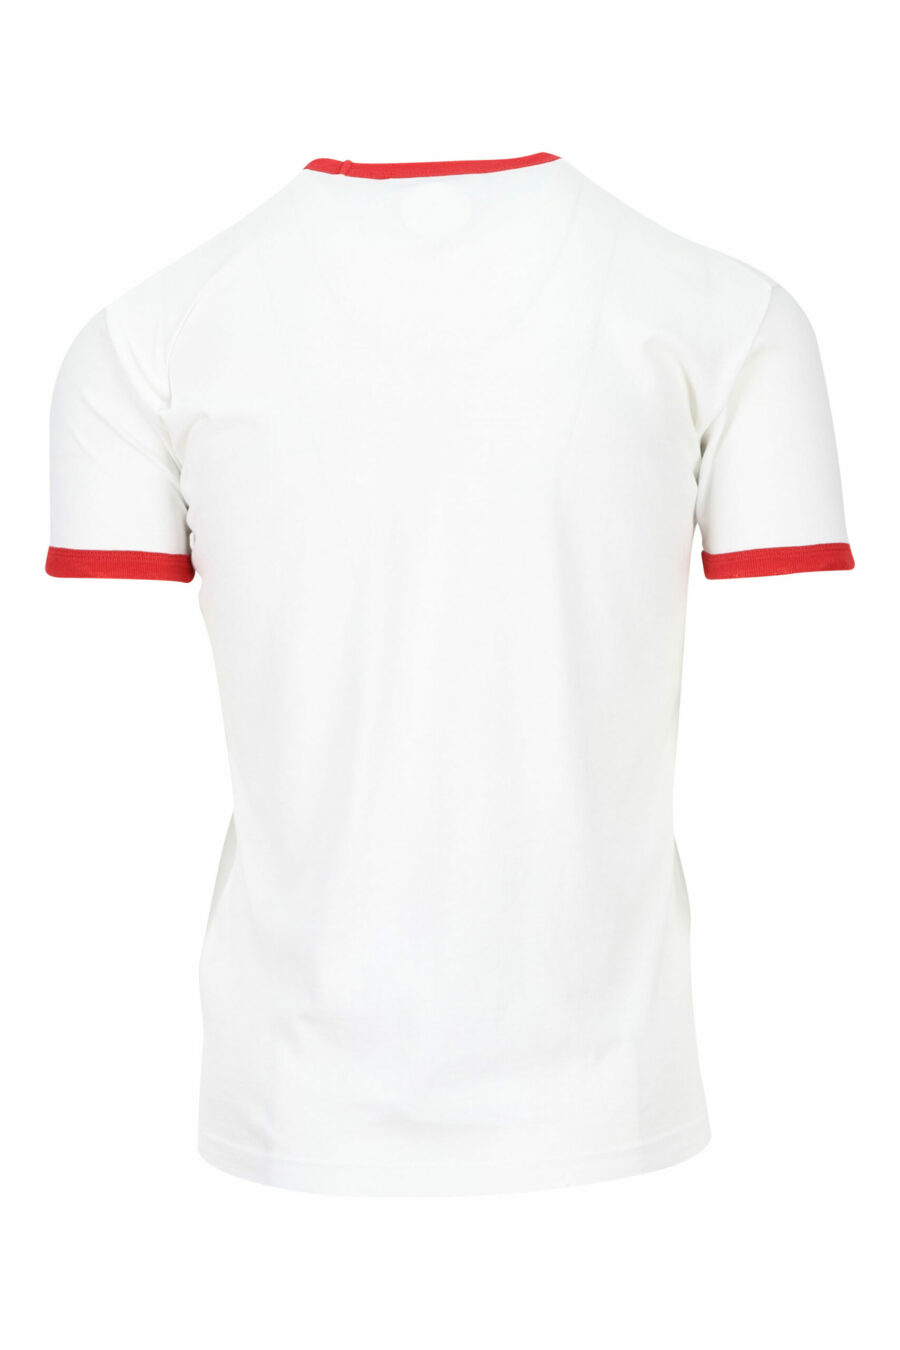 T-shirt branca com pormenores vermelhos e estampado de folhas - 8054148150792 1 scaled